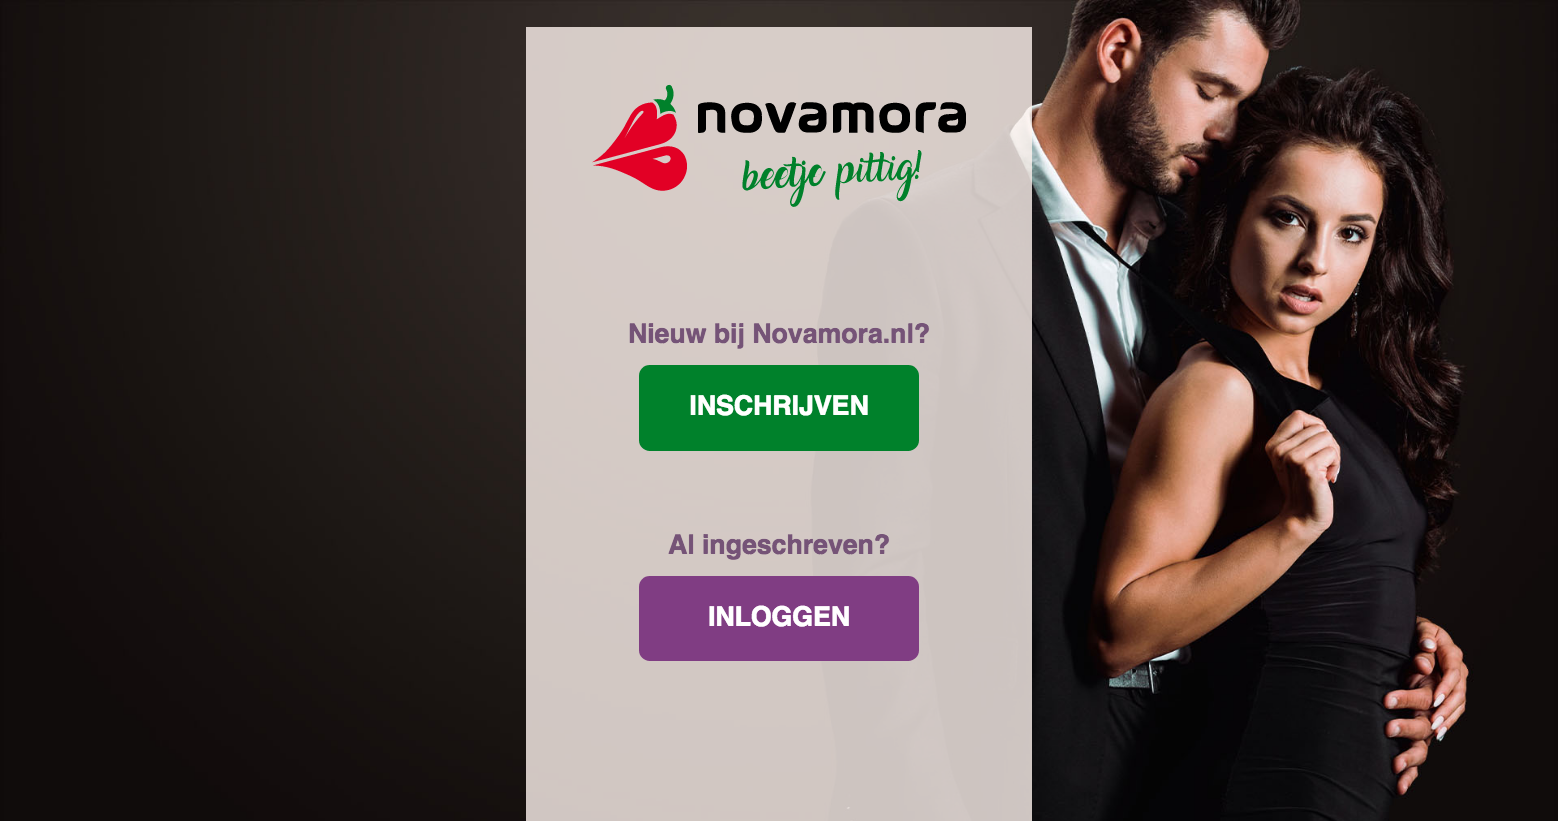 Novamora datingsite voorbeeld